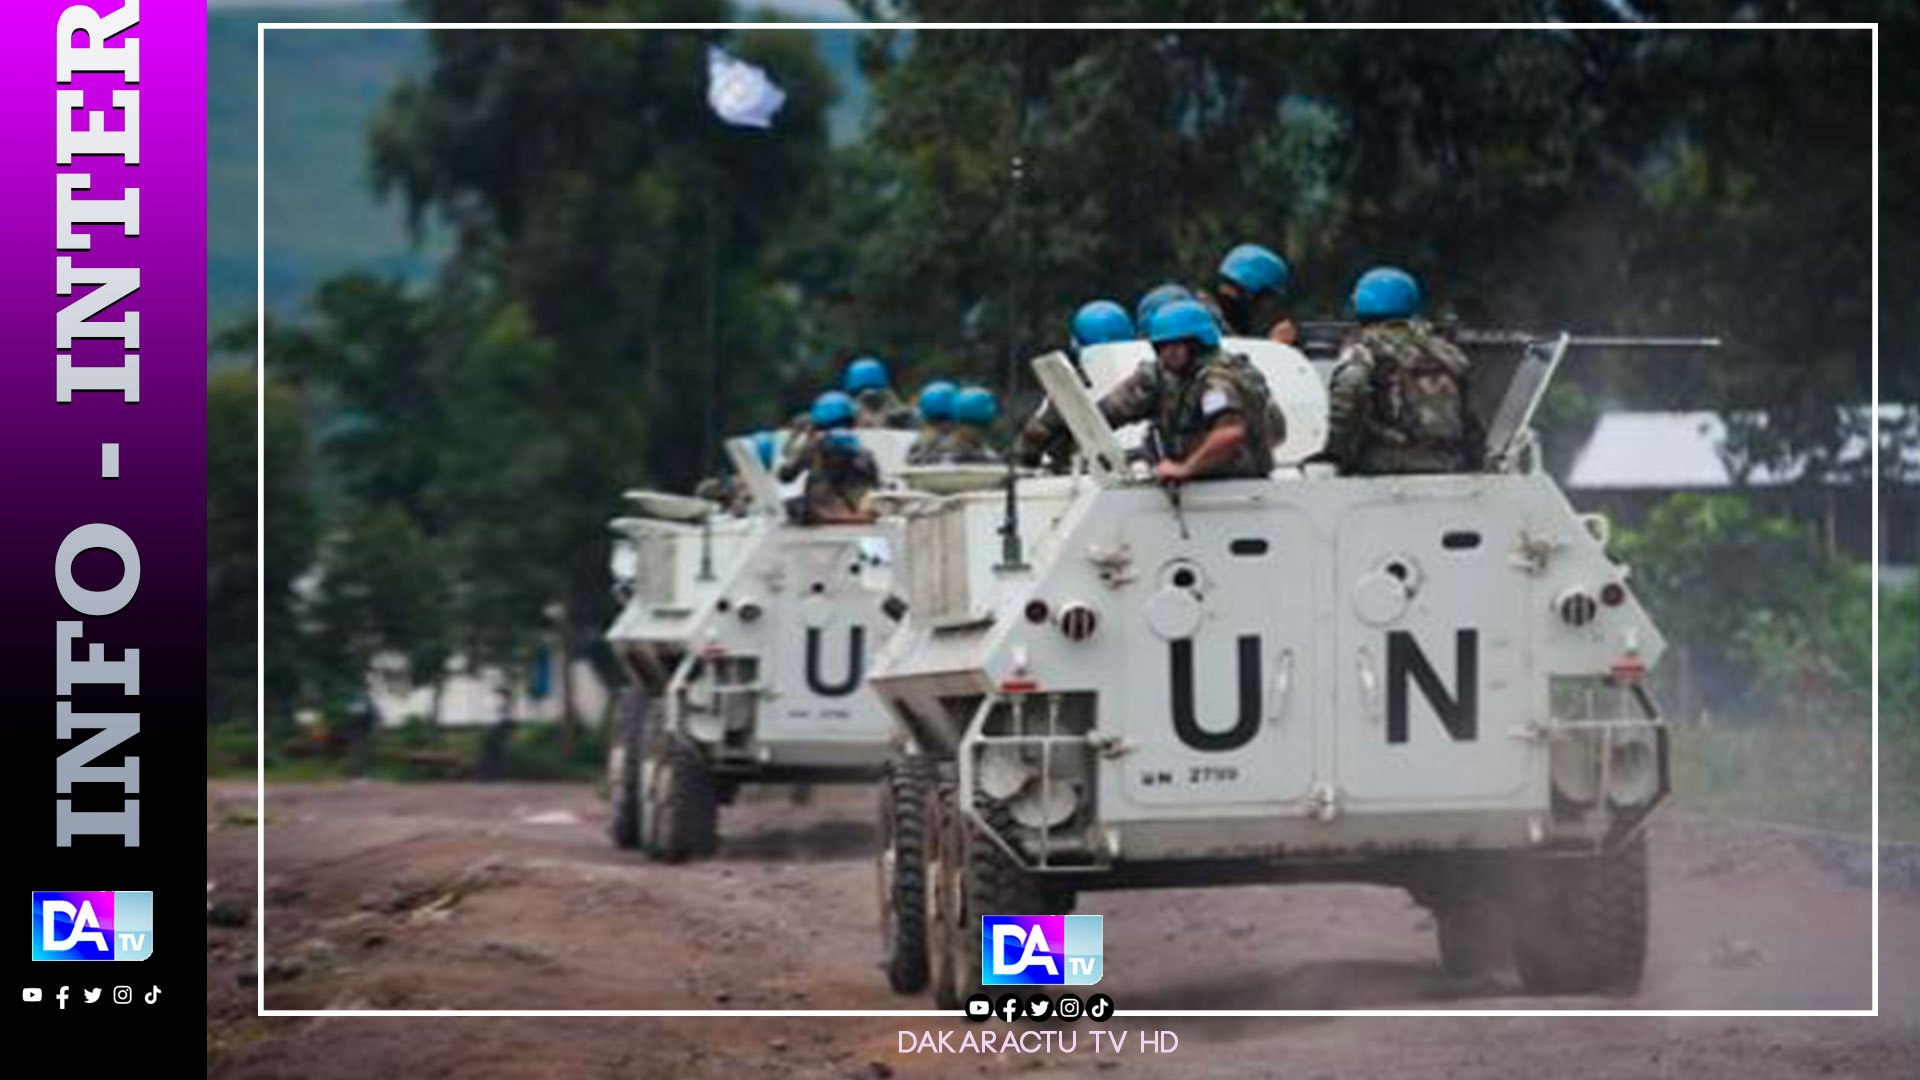 RDC : Pourquoi l'ONU retire-t-elle ses troupes ?